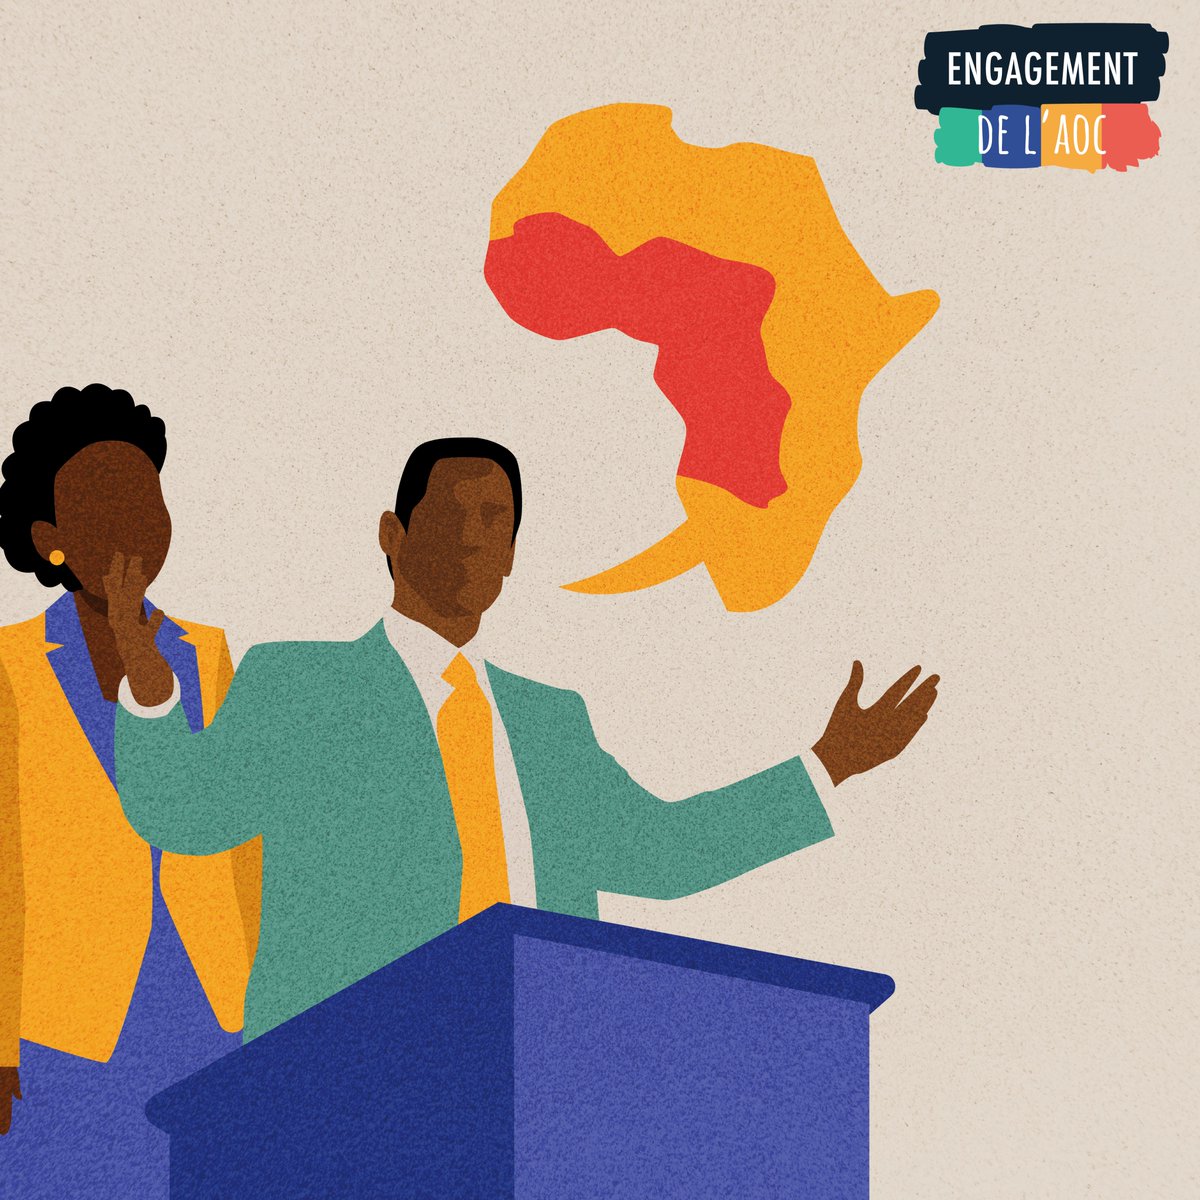 Les adolescents et les jeunes ont droit à l'éducation 👩🎓 et à la santé ⚕️. Les ministres de l'éducation et de la santé d'Afrique de l'Ouest et du Centre 🌍 sont d'accord🤝. #EngagementAOC #LéducationSauveDesVies #Anniversaire1an